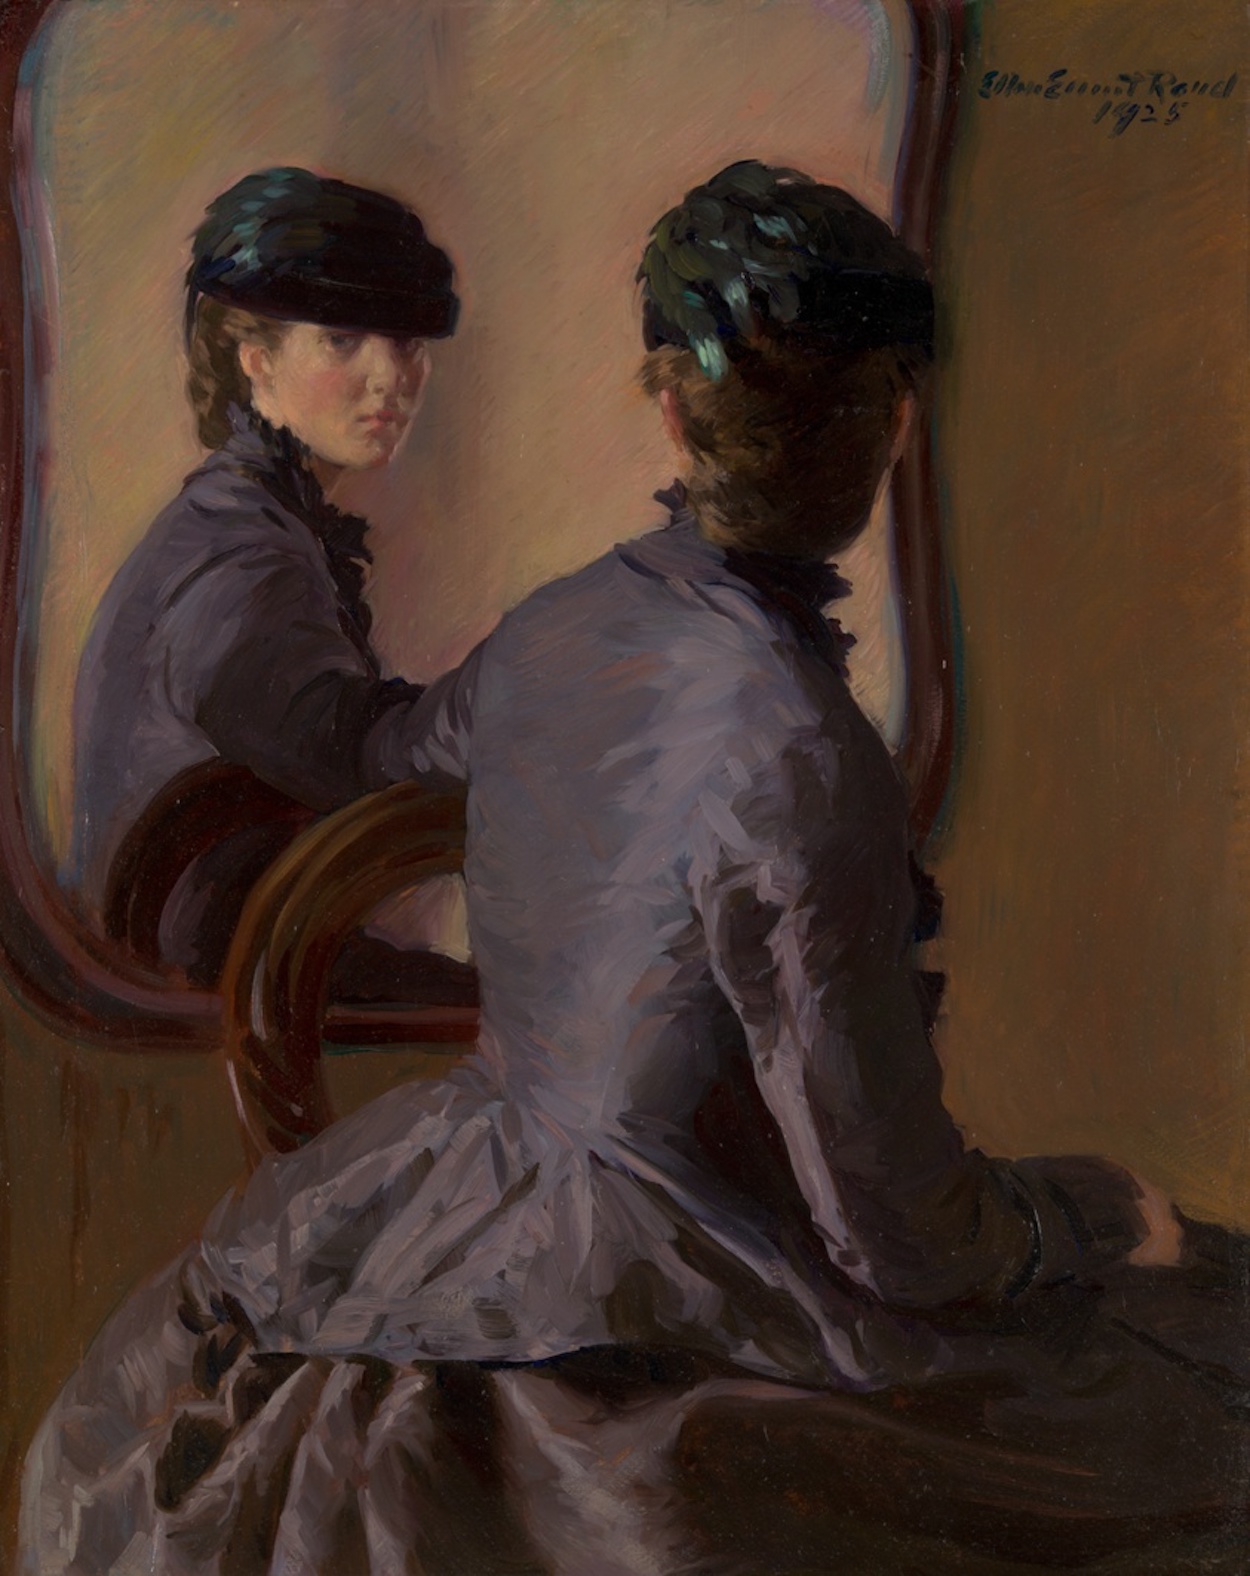 镜子前的女人 by 埃伦 艾梅特·兰德 - 1925 - 70.8 × 54.6 cm 芝加哥藝術博物館